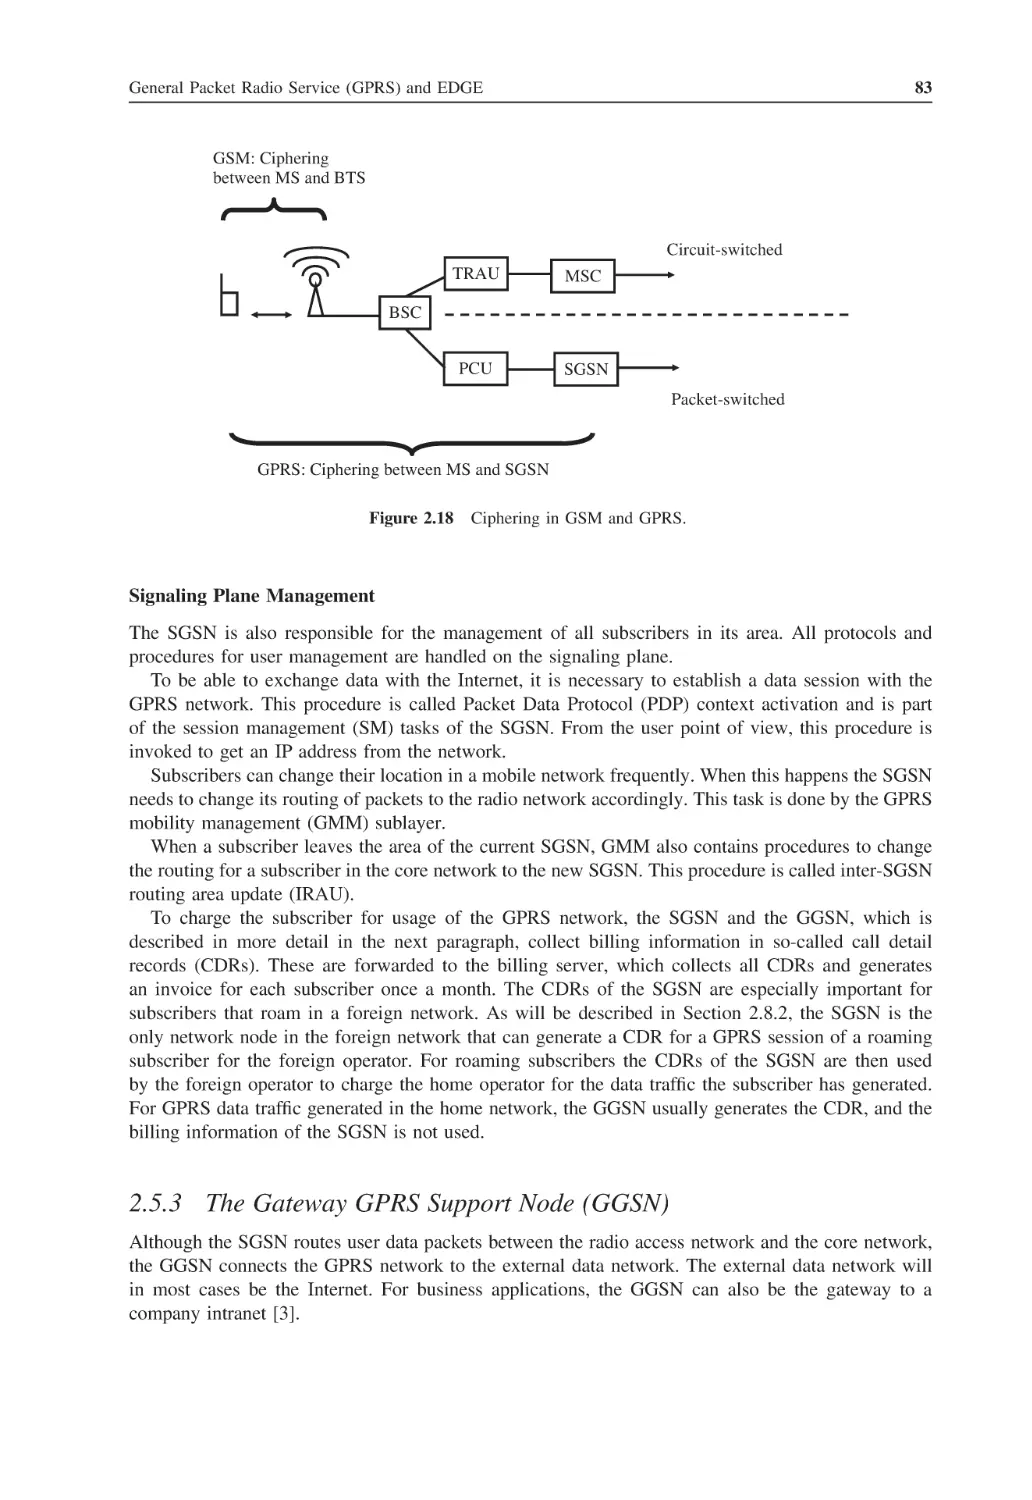 2.5.3 The Gateway GPRS Support Node (GGSN)